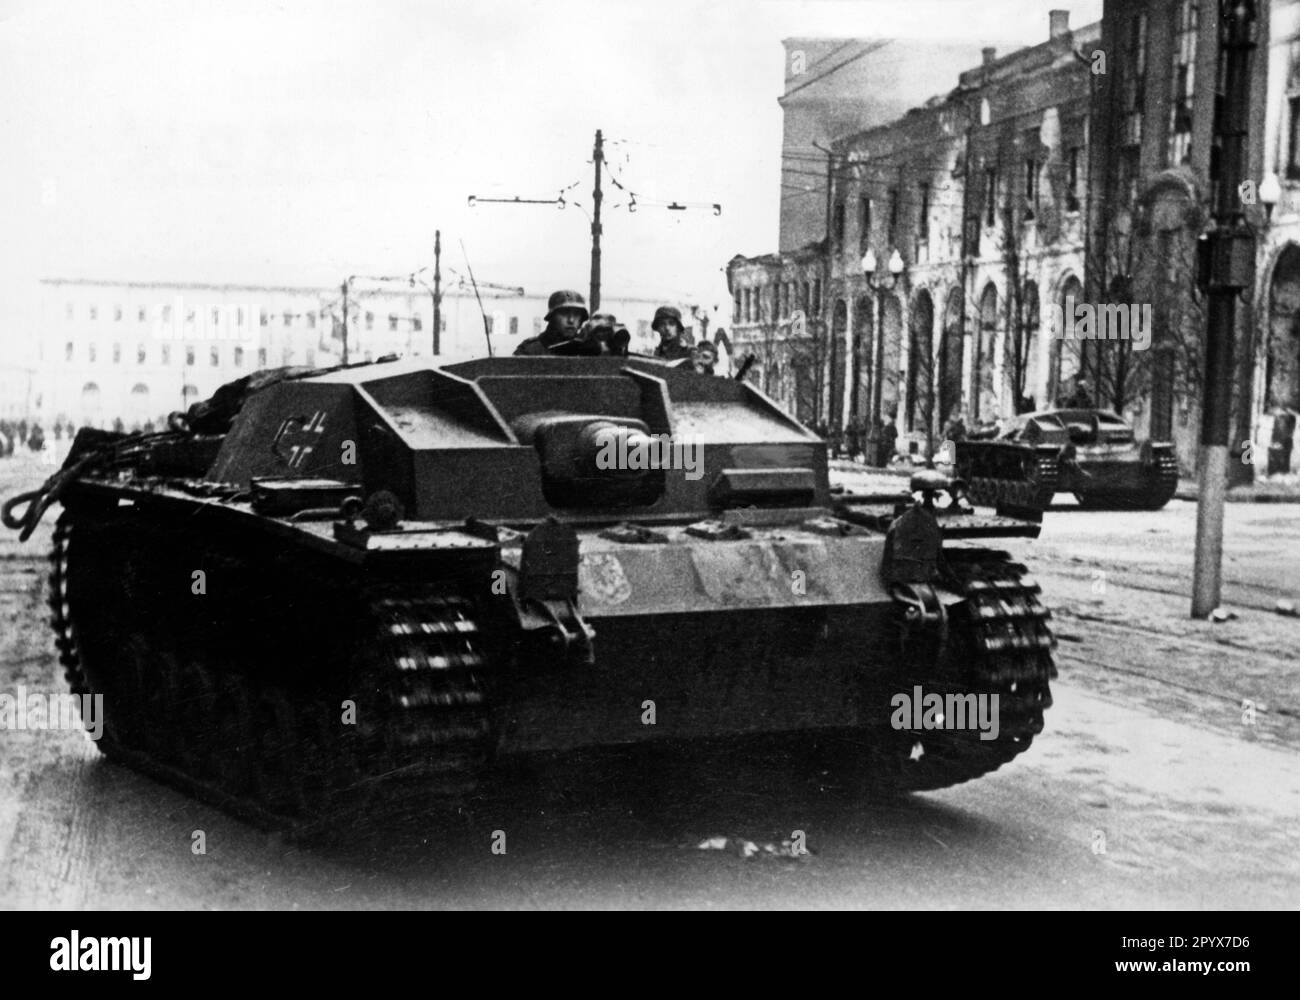 Fusils d'assaut allemands lors de la capture de Kharkov (Kharkiv), Ukraine. Photo: Mittelstaedt [traduction automatique] Banque D'Images